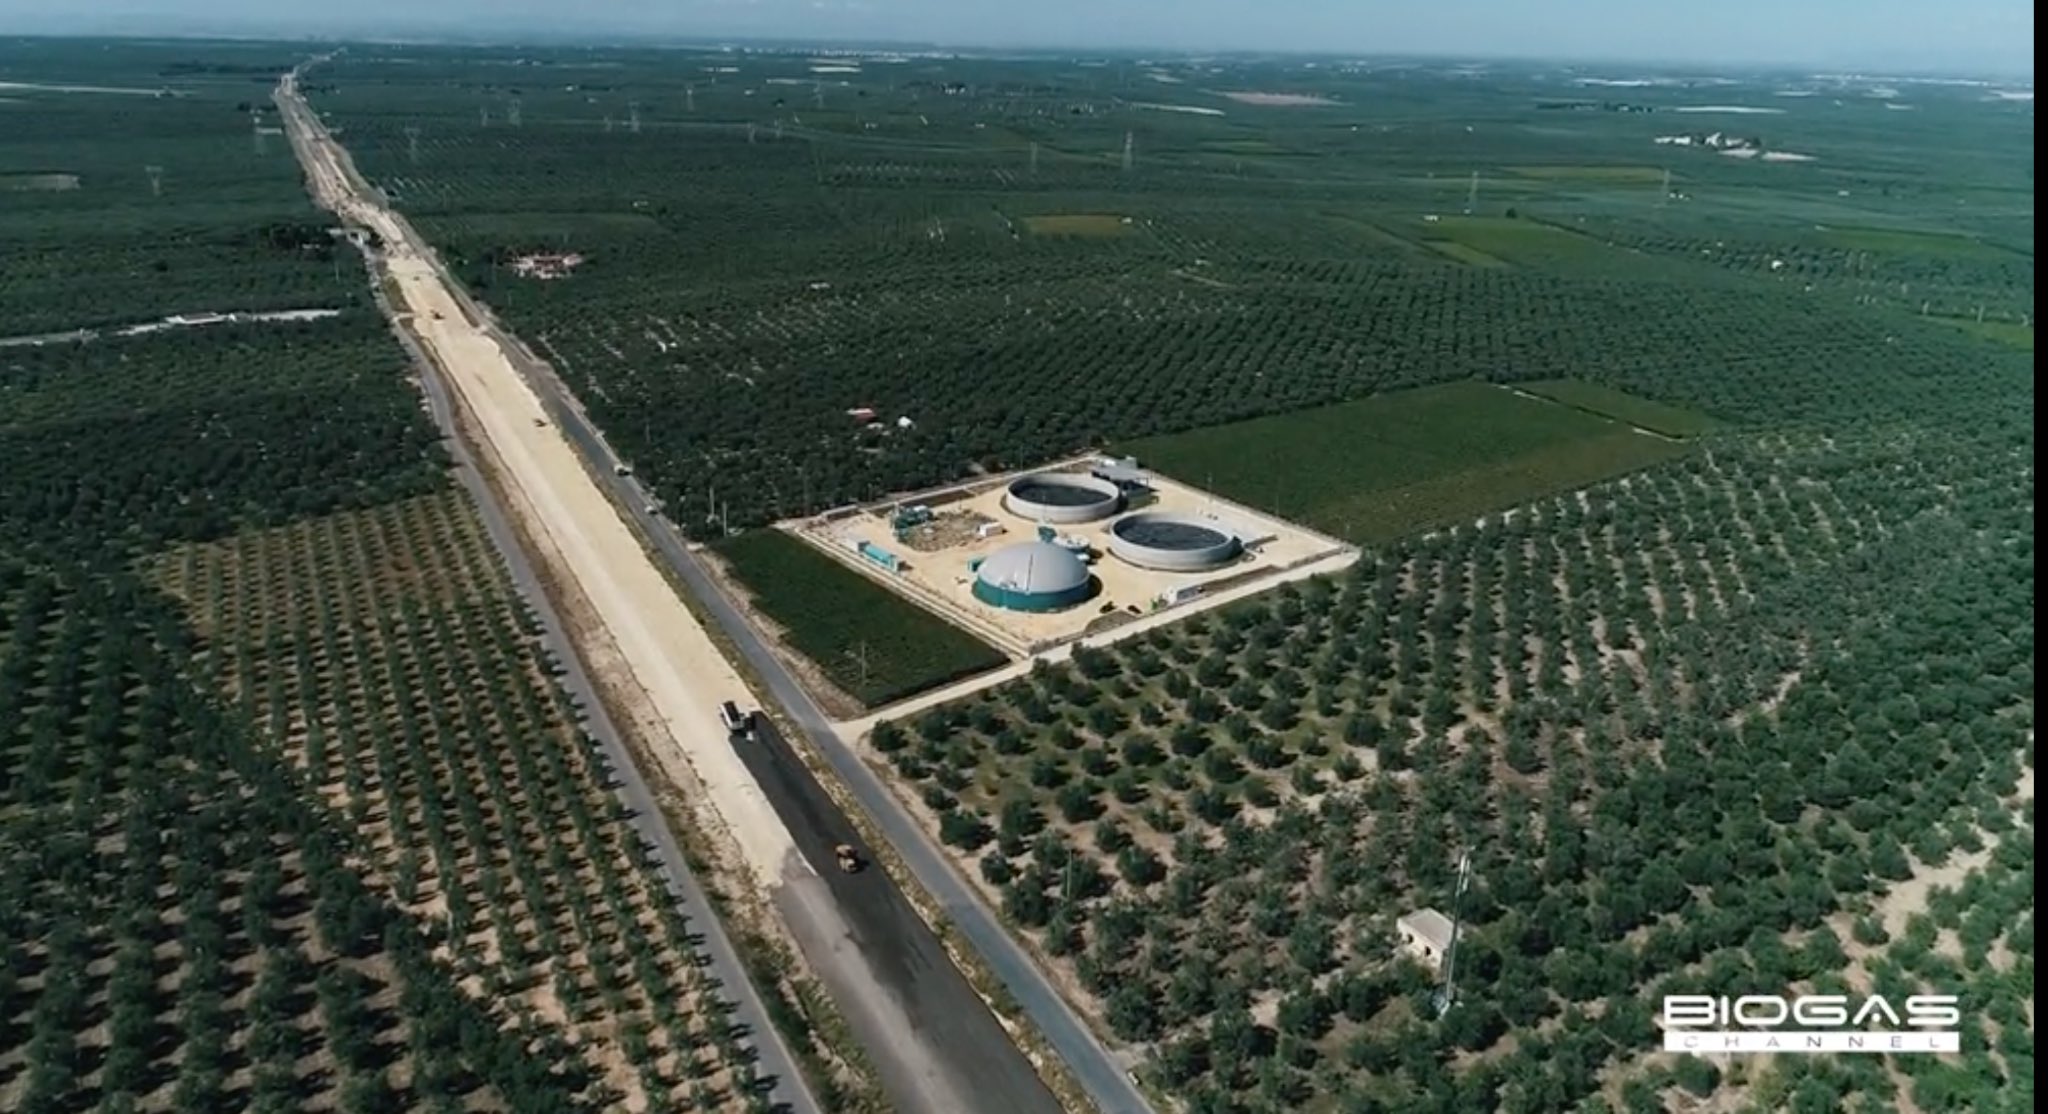 Featured image for “Biogas Channel ha realizzato un video di approfondimento sull’impianto biogas Agroenergy, localizzato in Puglia”